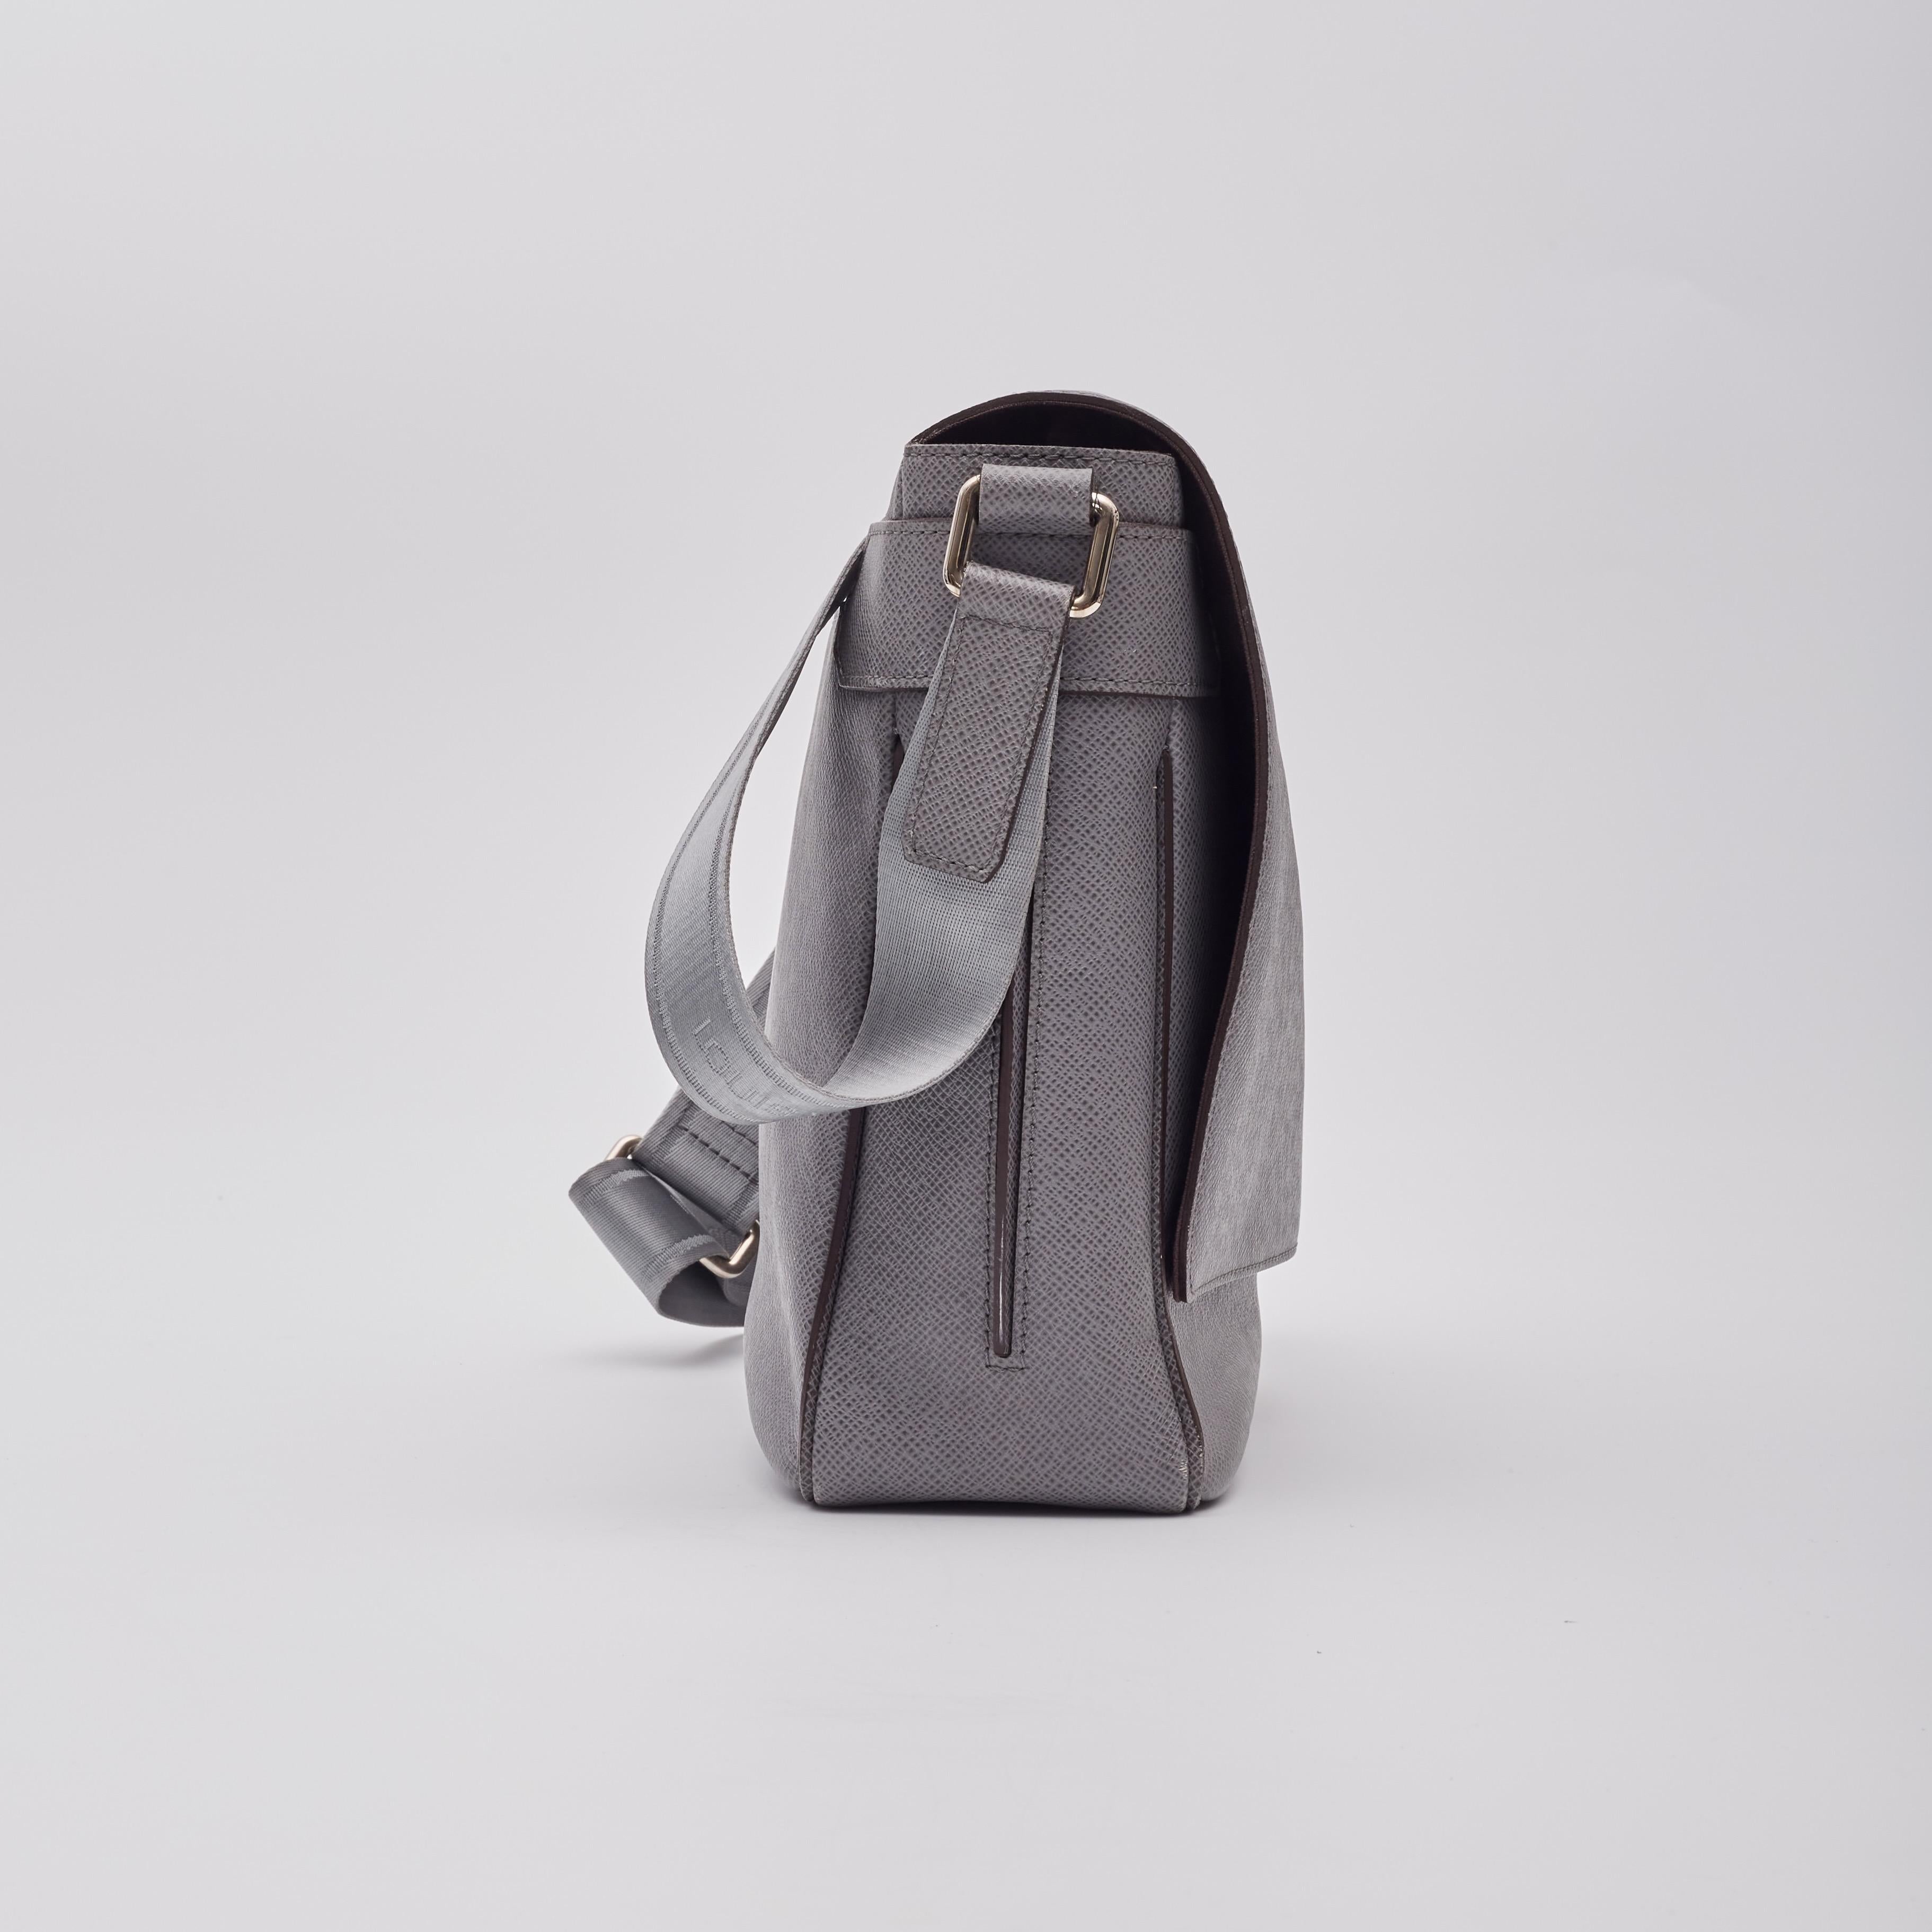 Diese Umhängetasche ist aus grauem, quer genarbtem Leder gefertigt. Der verstellbare Schulterriemen aus Textil ist mit dem Louis-Logo versehen, und die Tasche hat einen Überschlag auf der Vorderseite, der zu einem Innenraum aus braunem Stoff mit